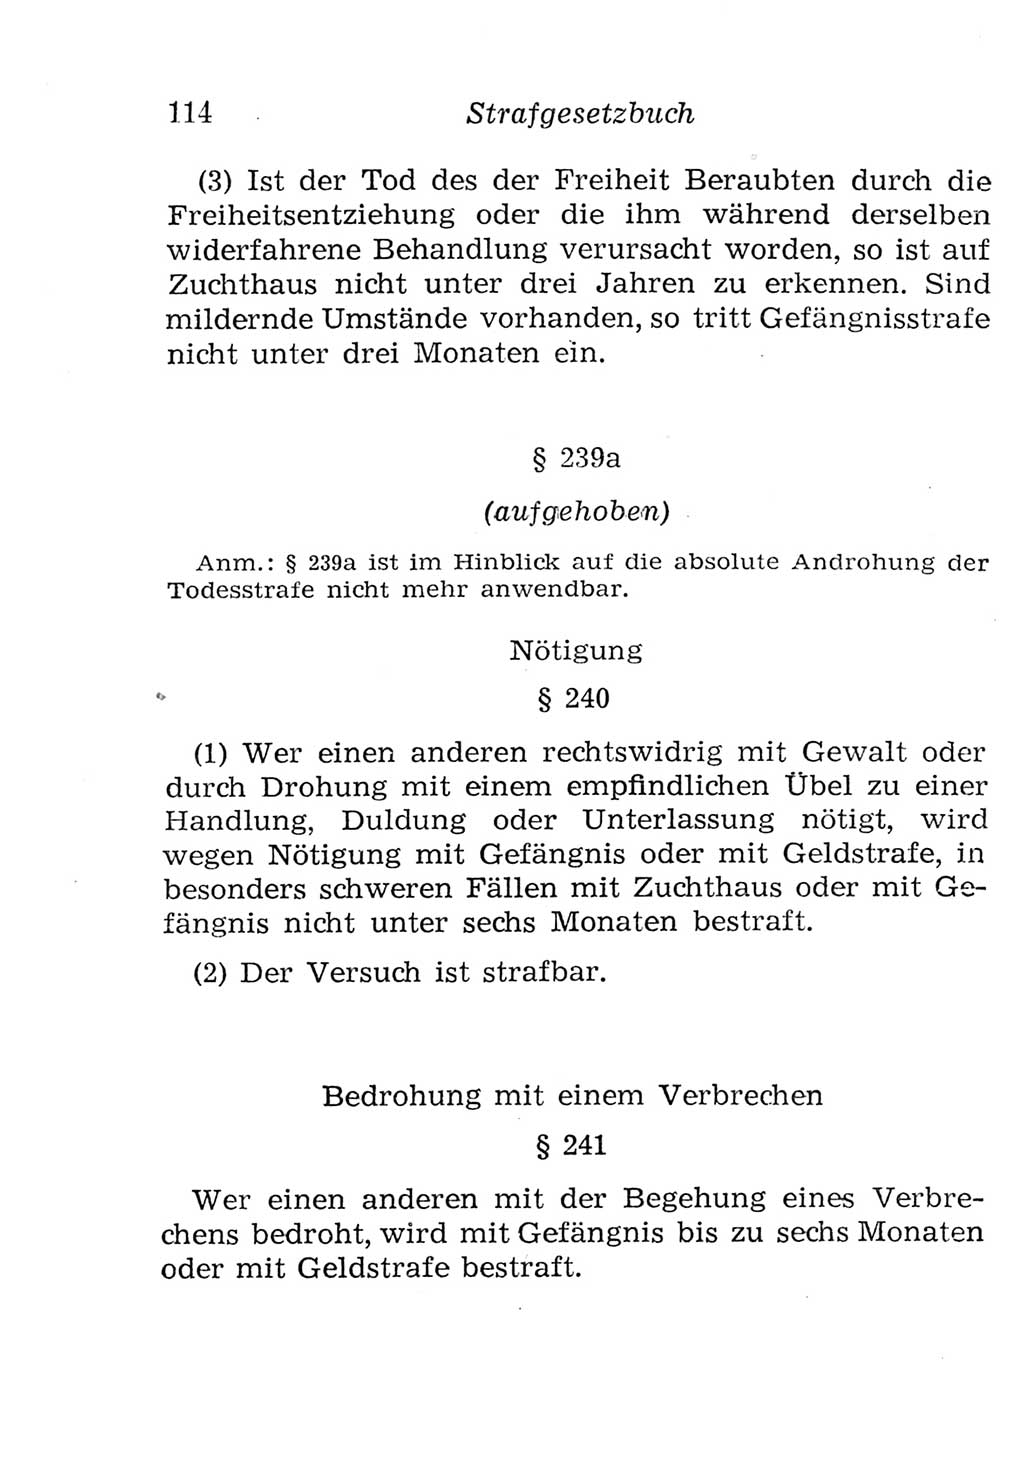 Strafgesetzbuch (StGB) und andere Strafgesetze [Deutsche Demokratische Republik (DDR)] 1957, Seite 114 (StGB Strafges. DDR 1957, S. 114)